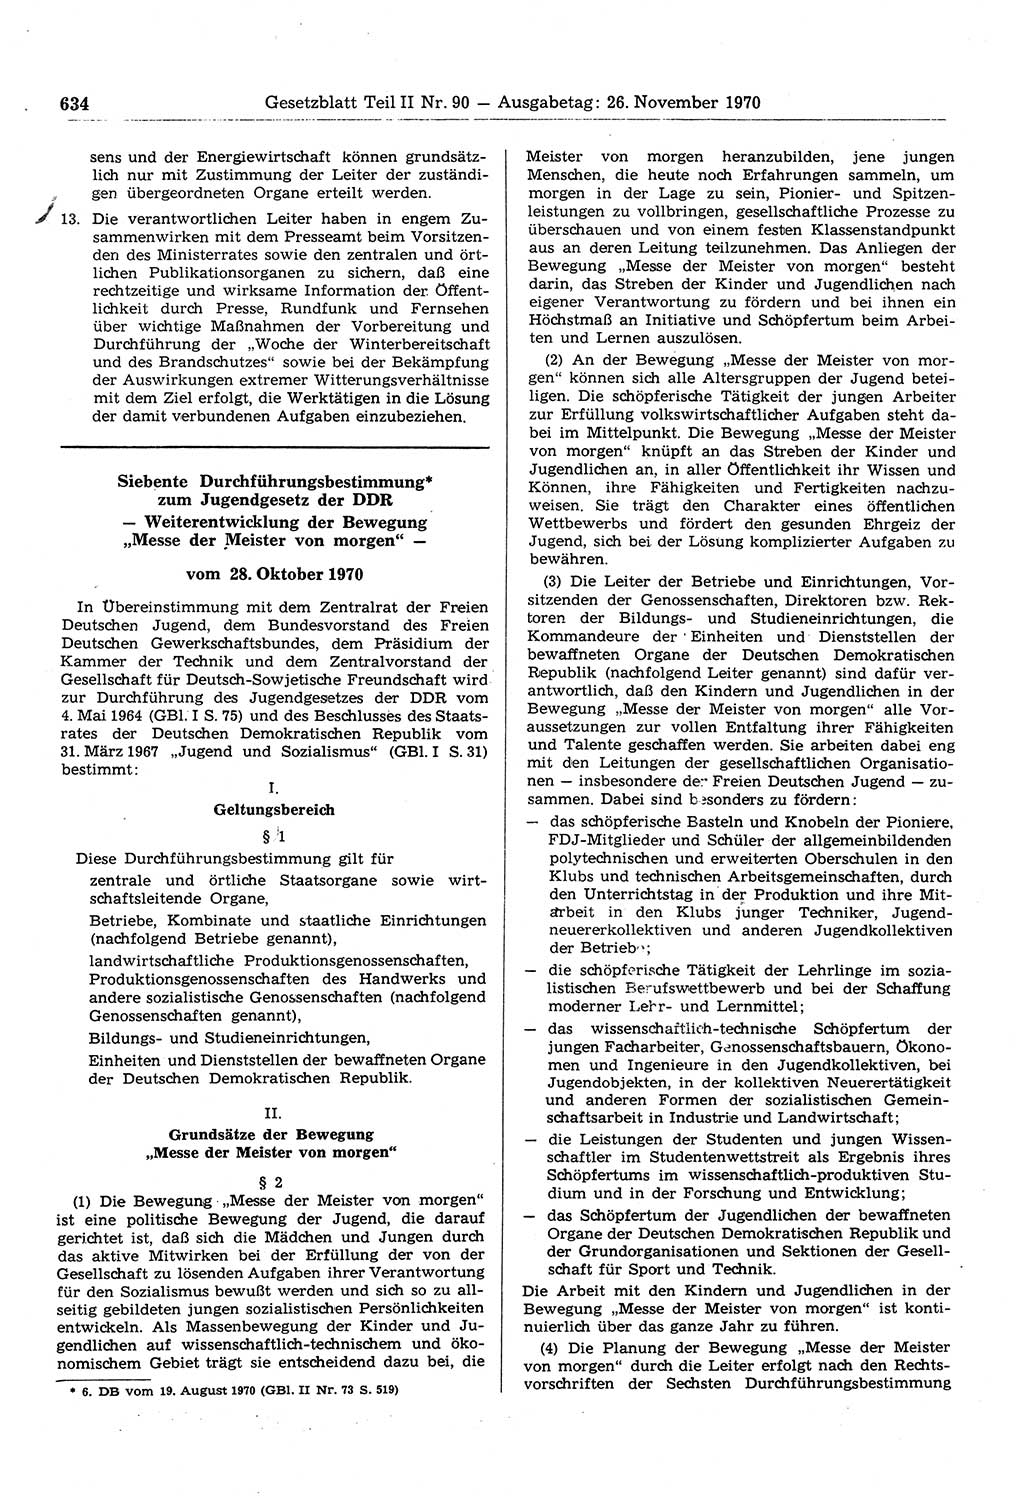 Gesetzblatt (GBl.) der Deutschen Demokratischen Republik (DDR) Teil ⅠⅠ 1970, Seite 634 (GBl. DDR ⅠⅠ 1970, S. 634)